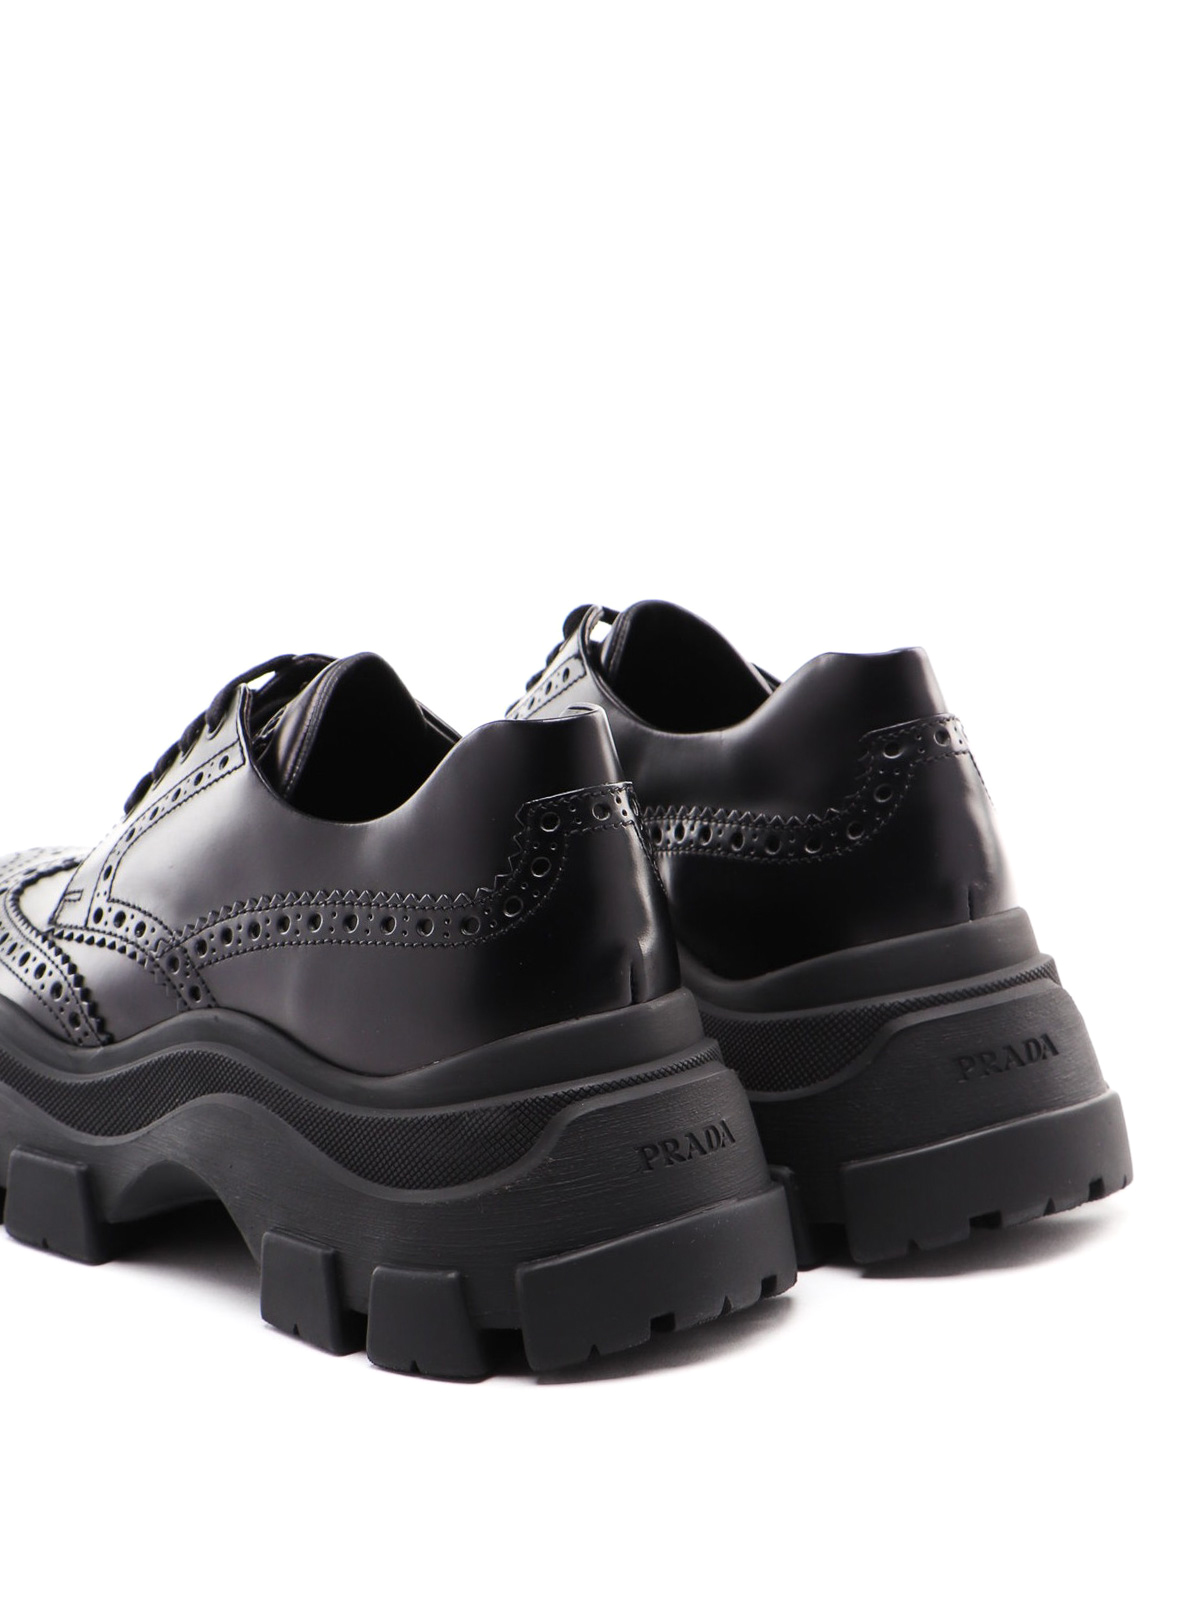 Trainers Prada - Pegasus black leather sneakers - 2EE323B4L002 ...